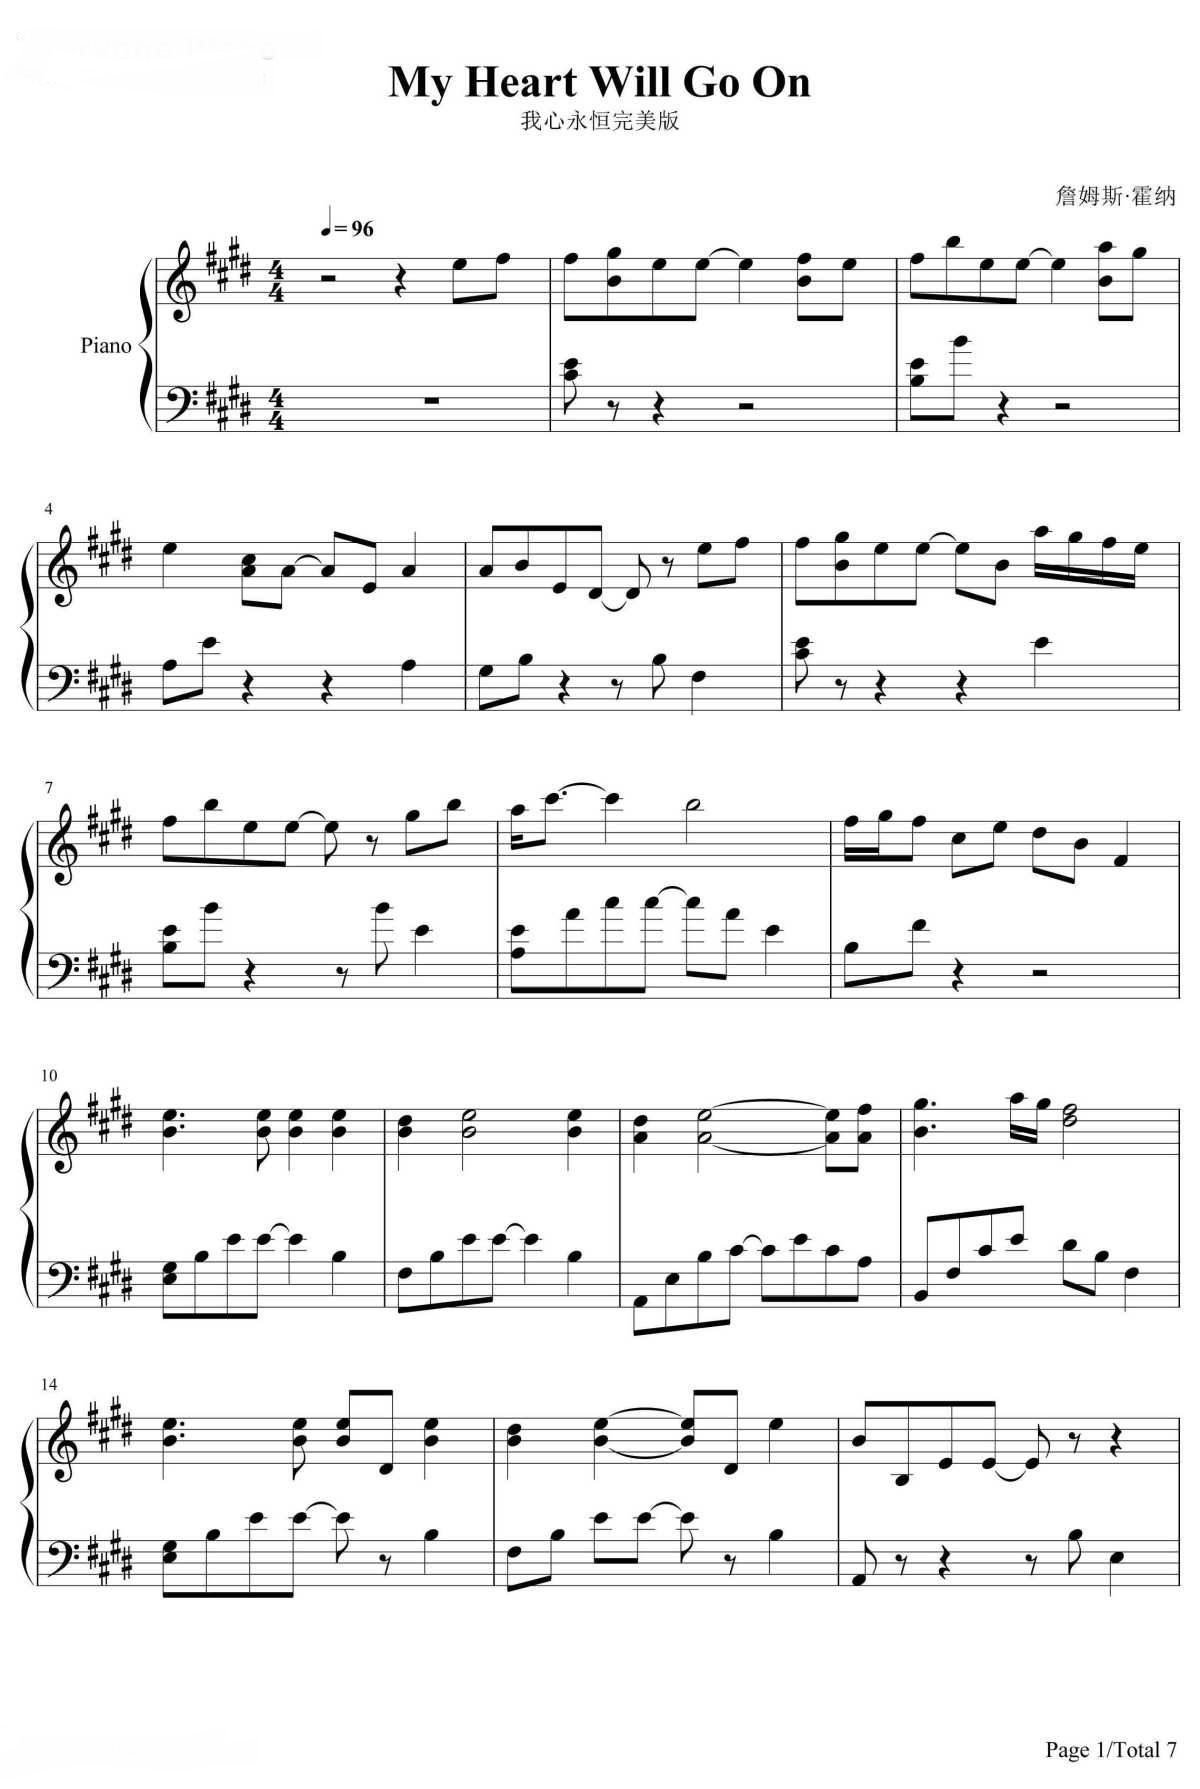 《我心永恒》的钢琴谱钢琴曲谱 - Celine Dion